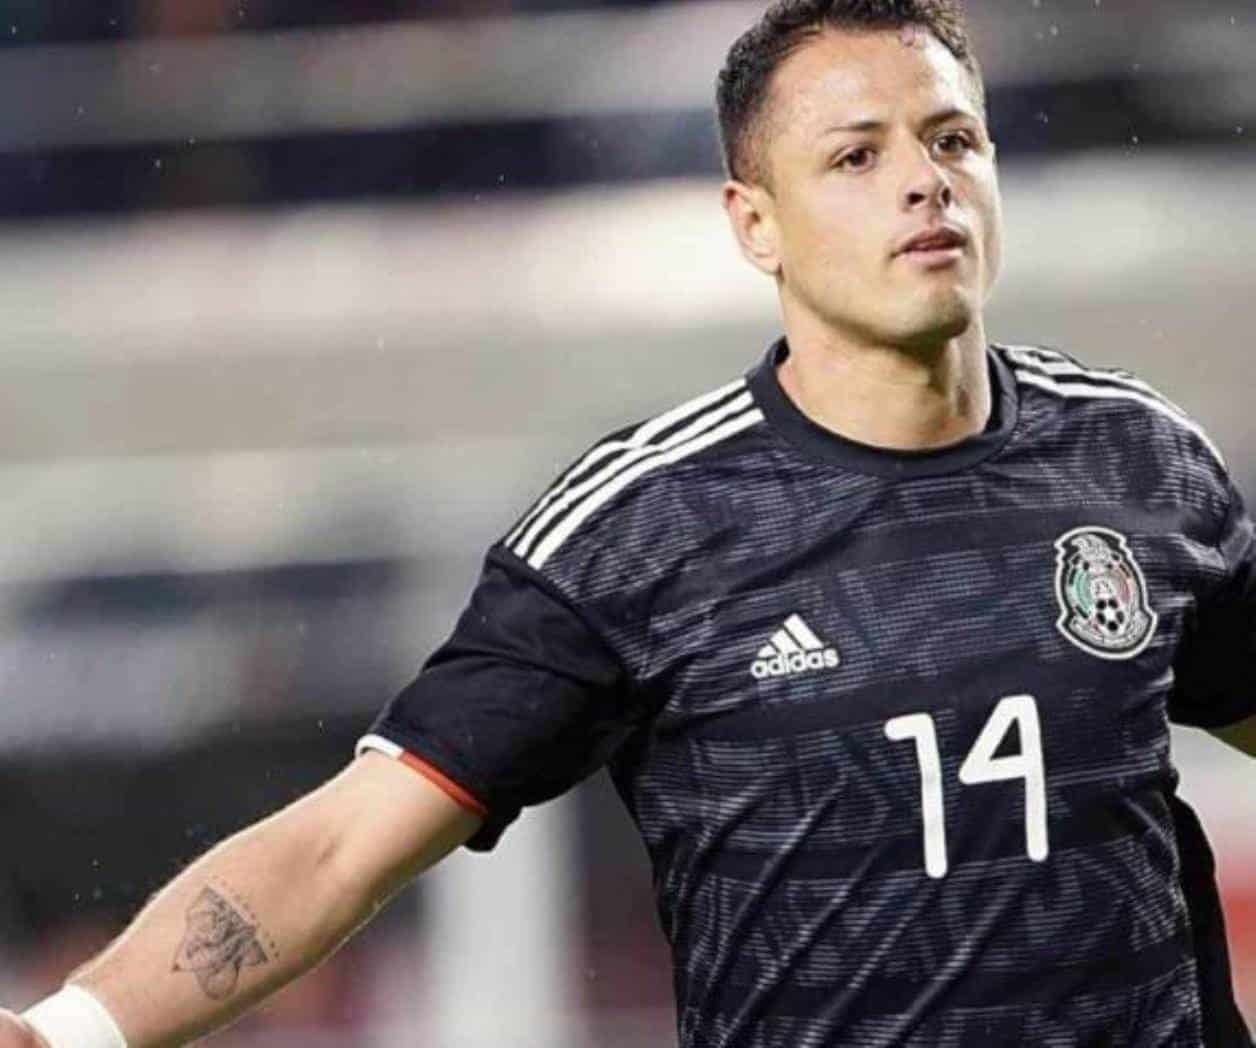 Héctor Herrera: “Siempre es bonito enfrentar a equipos mexicanos